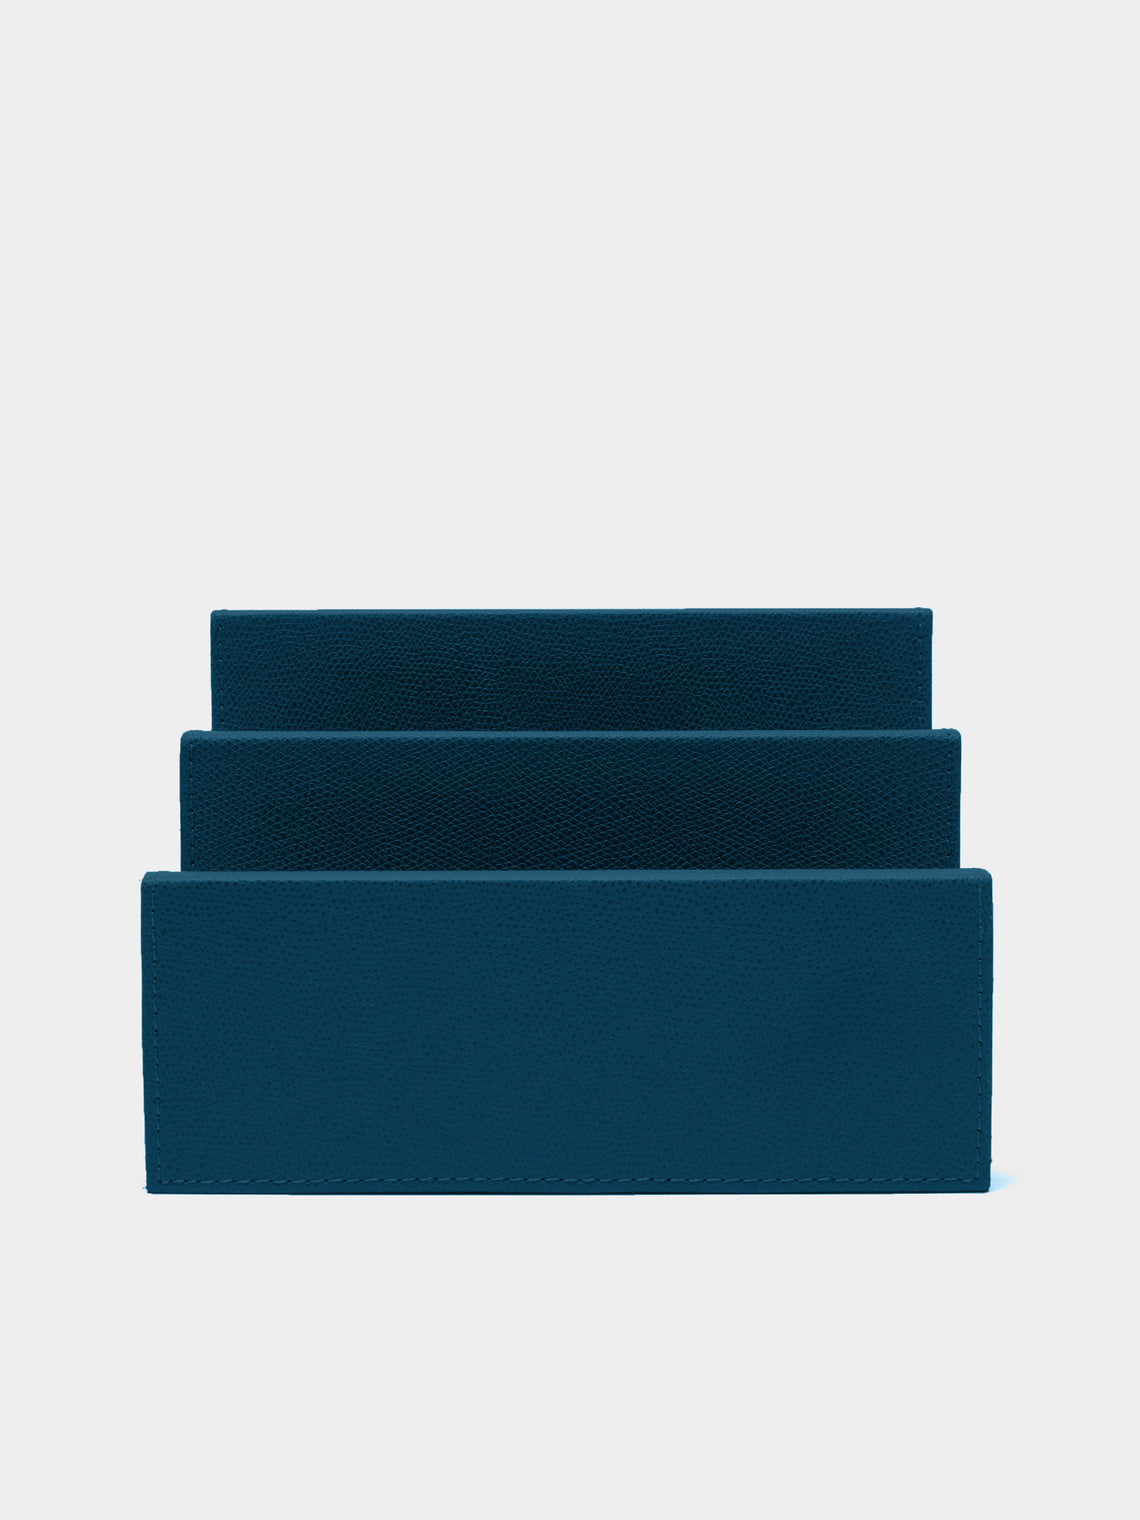 Giobagnara - Arthur Leather Letter Holder - Blue - ABASK - 